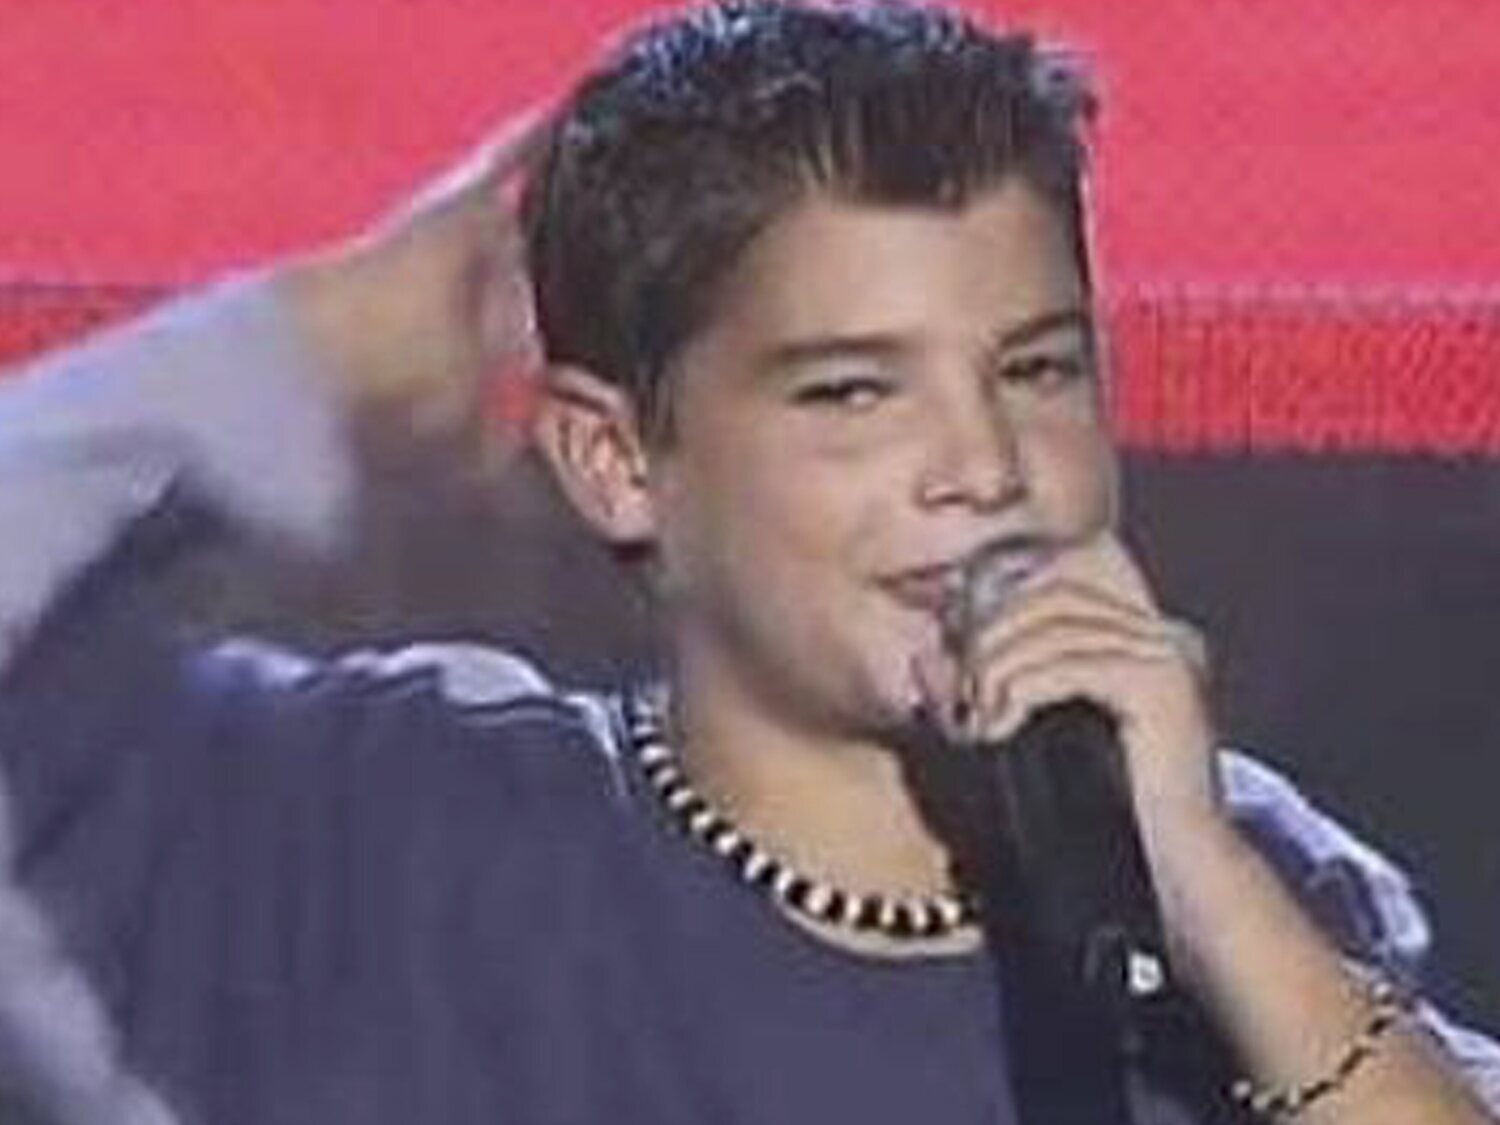 Qué fue de Diego Domínguez, el niño cantante que participó en Eurojunior 2003 con 'Chachi Piruli'